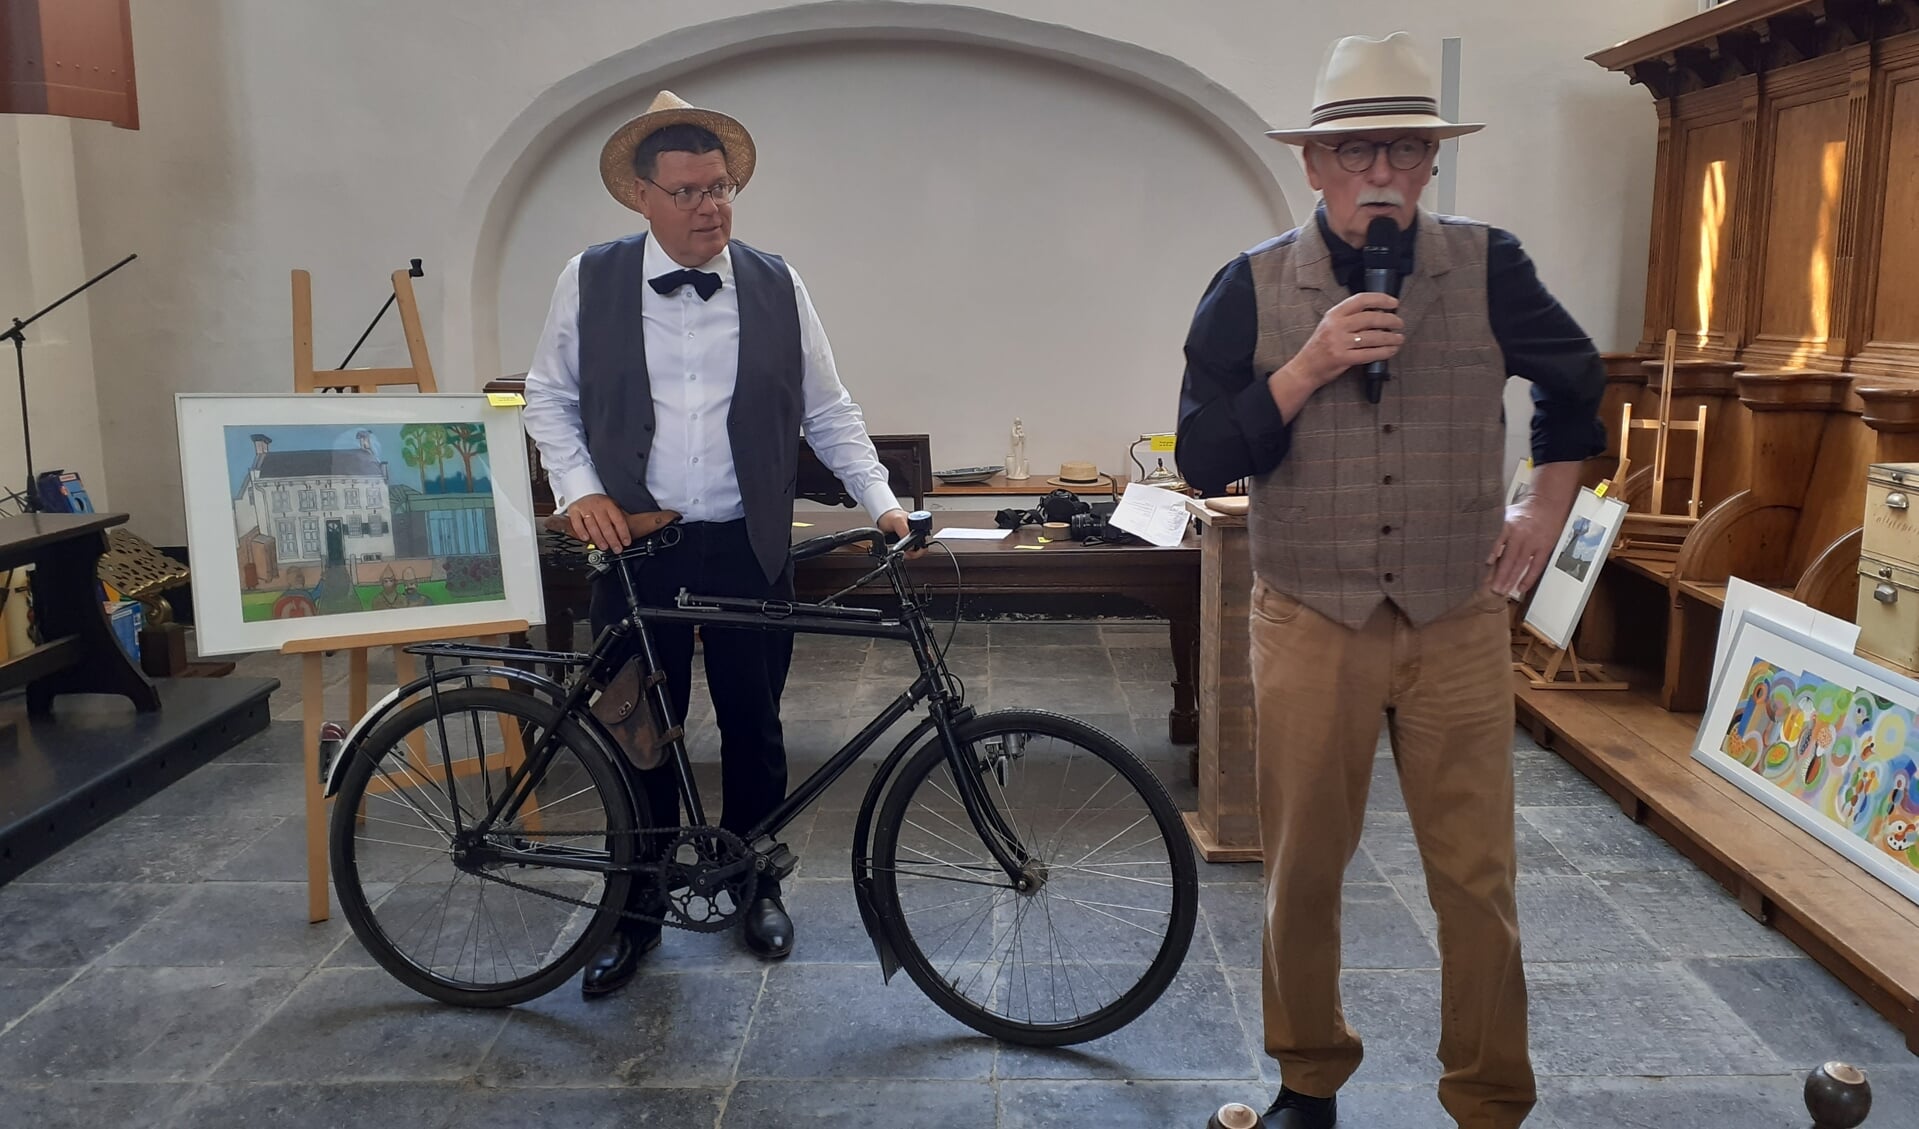 Veilingmeester Guus Swillens (r) biedt de bijzondere fiets aan